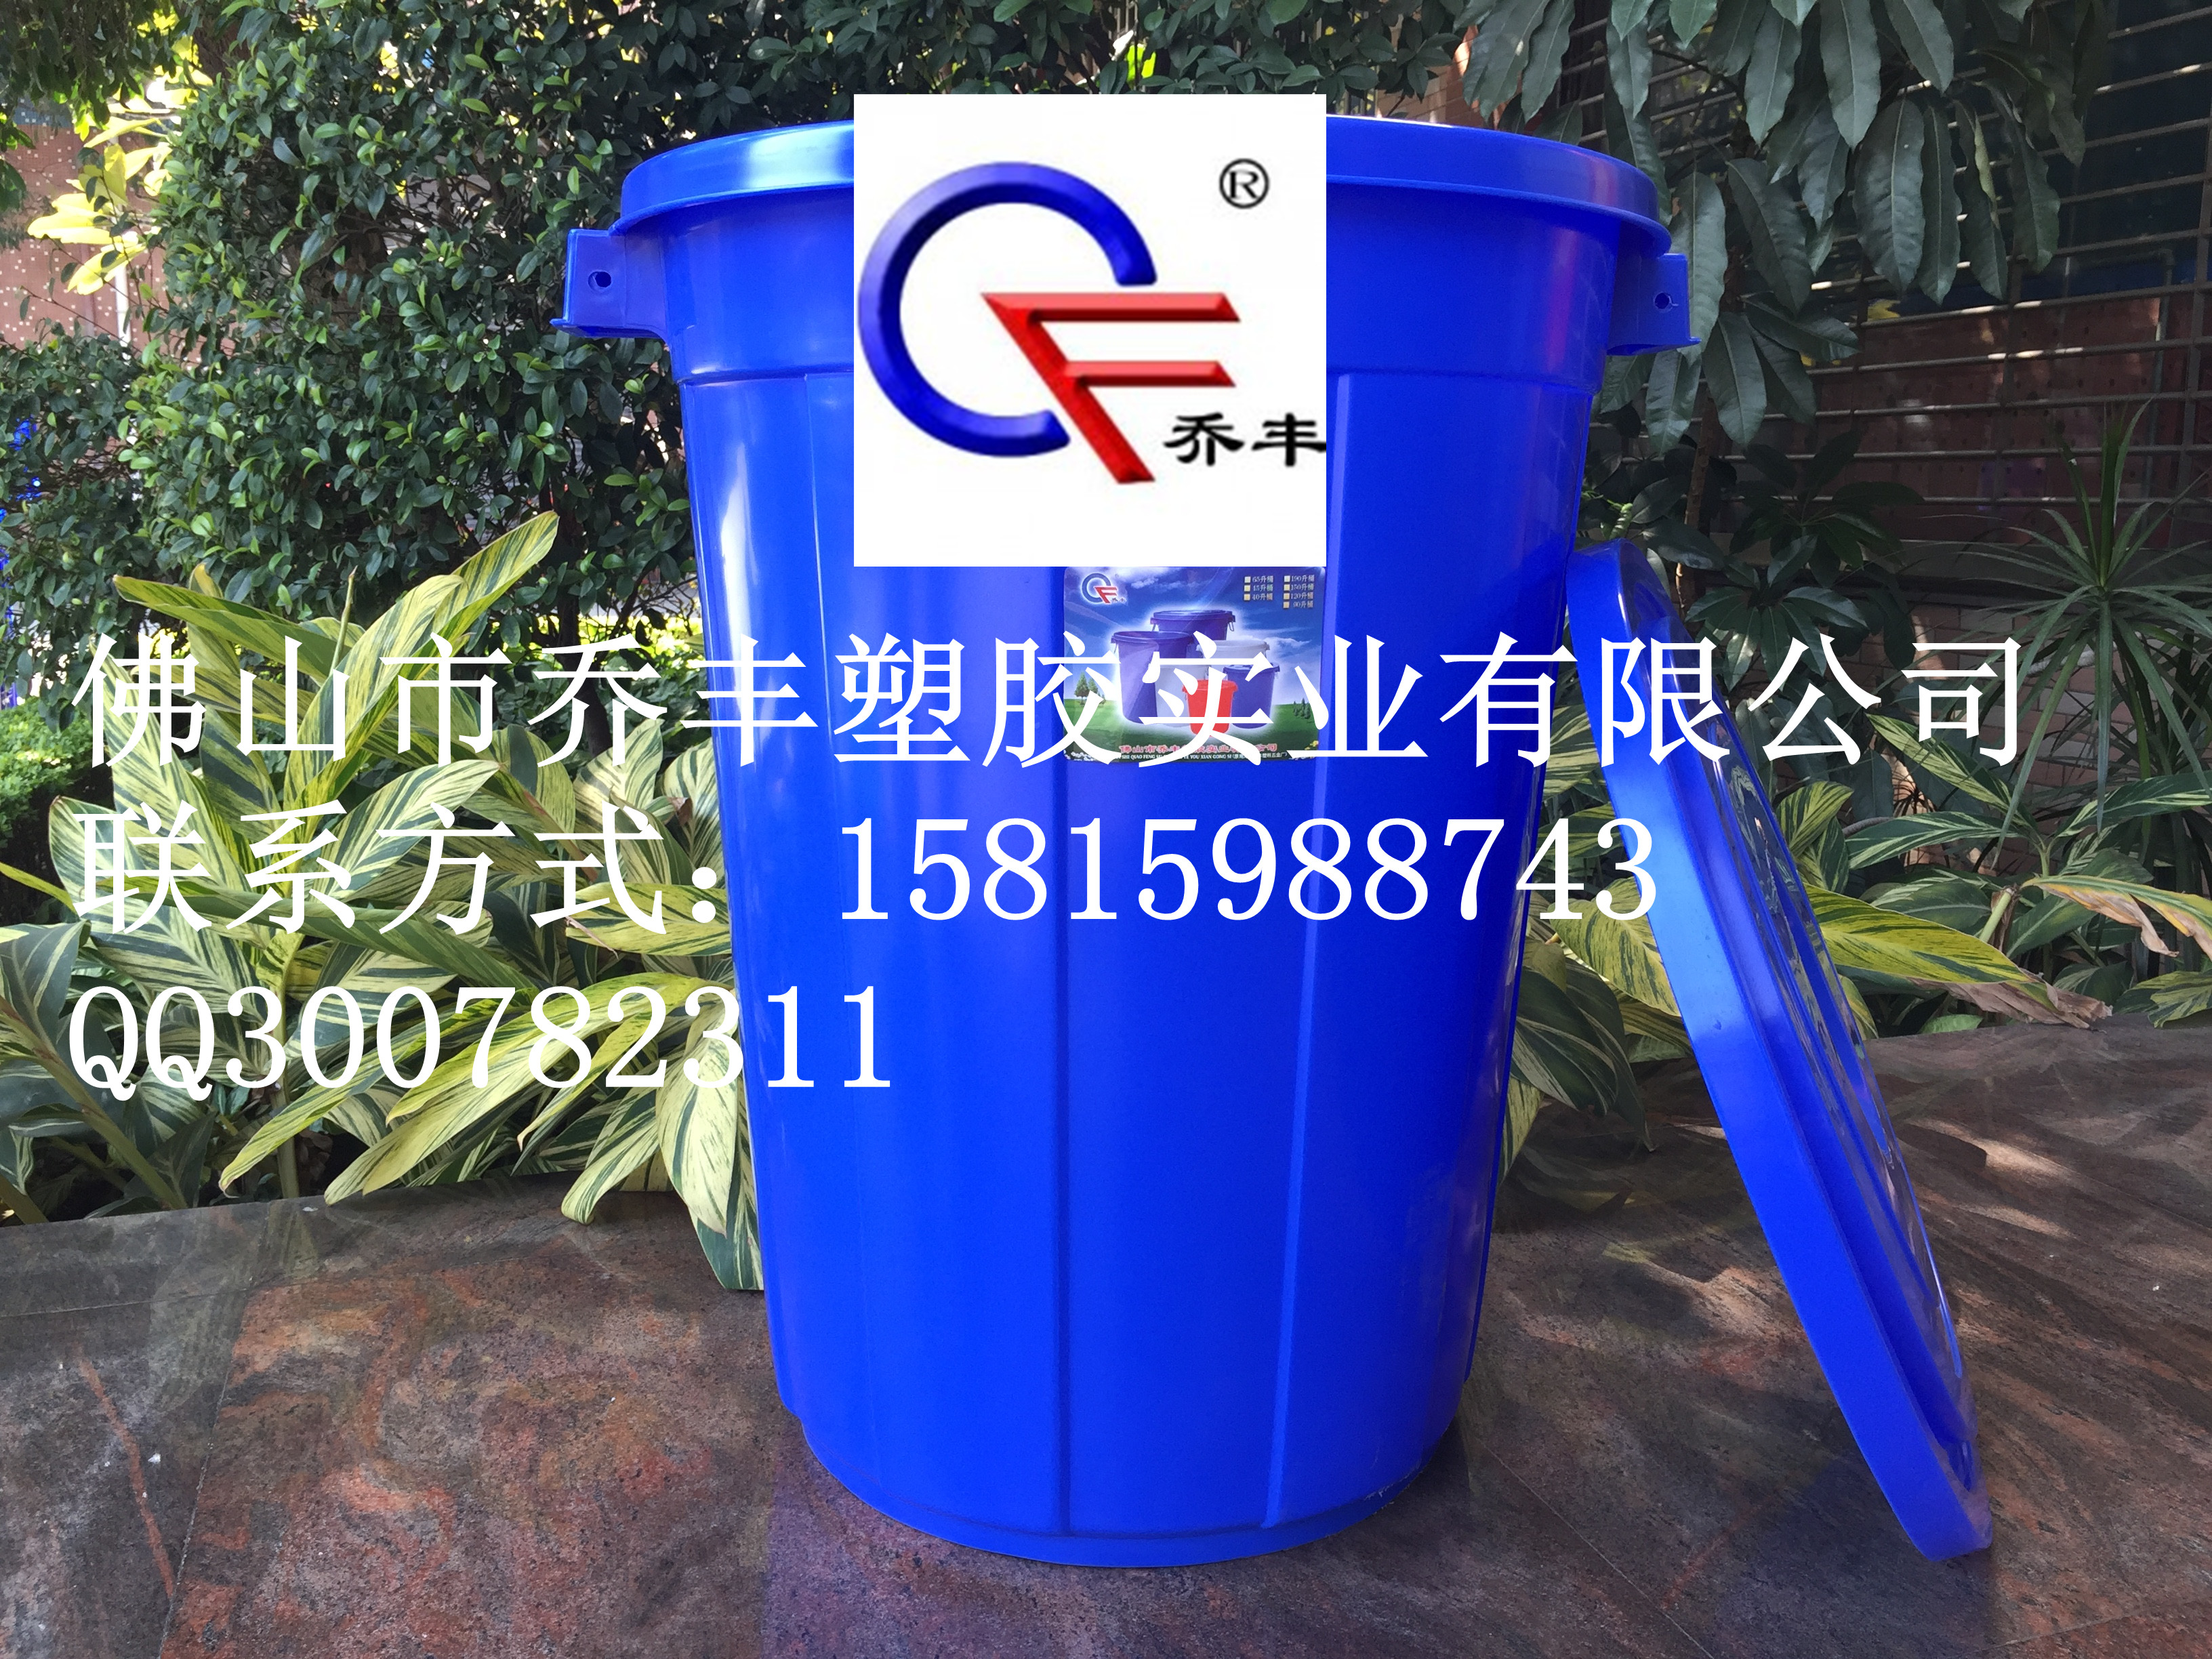 佛山加大号塑料白色水桶生产厂家 佛山乔丰塑胶实业有限公司